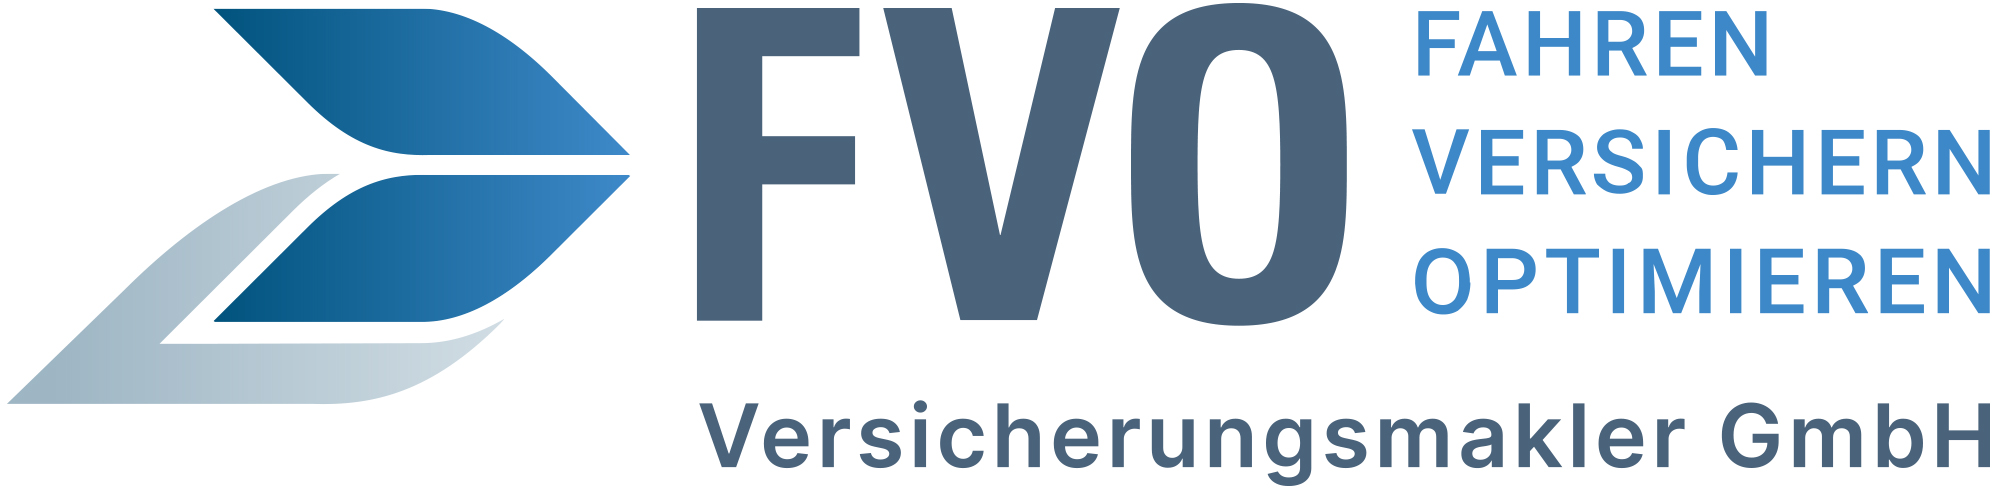 FVO Versicherungsmakler GmbH